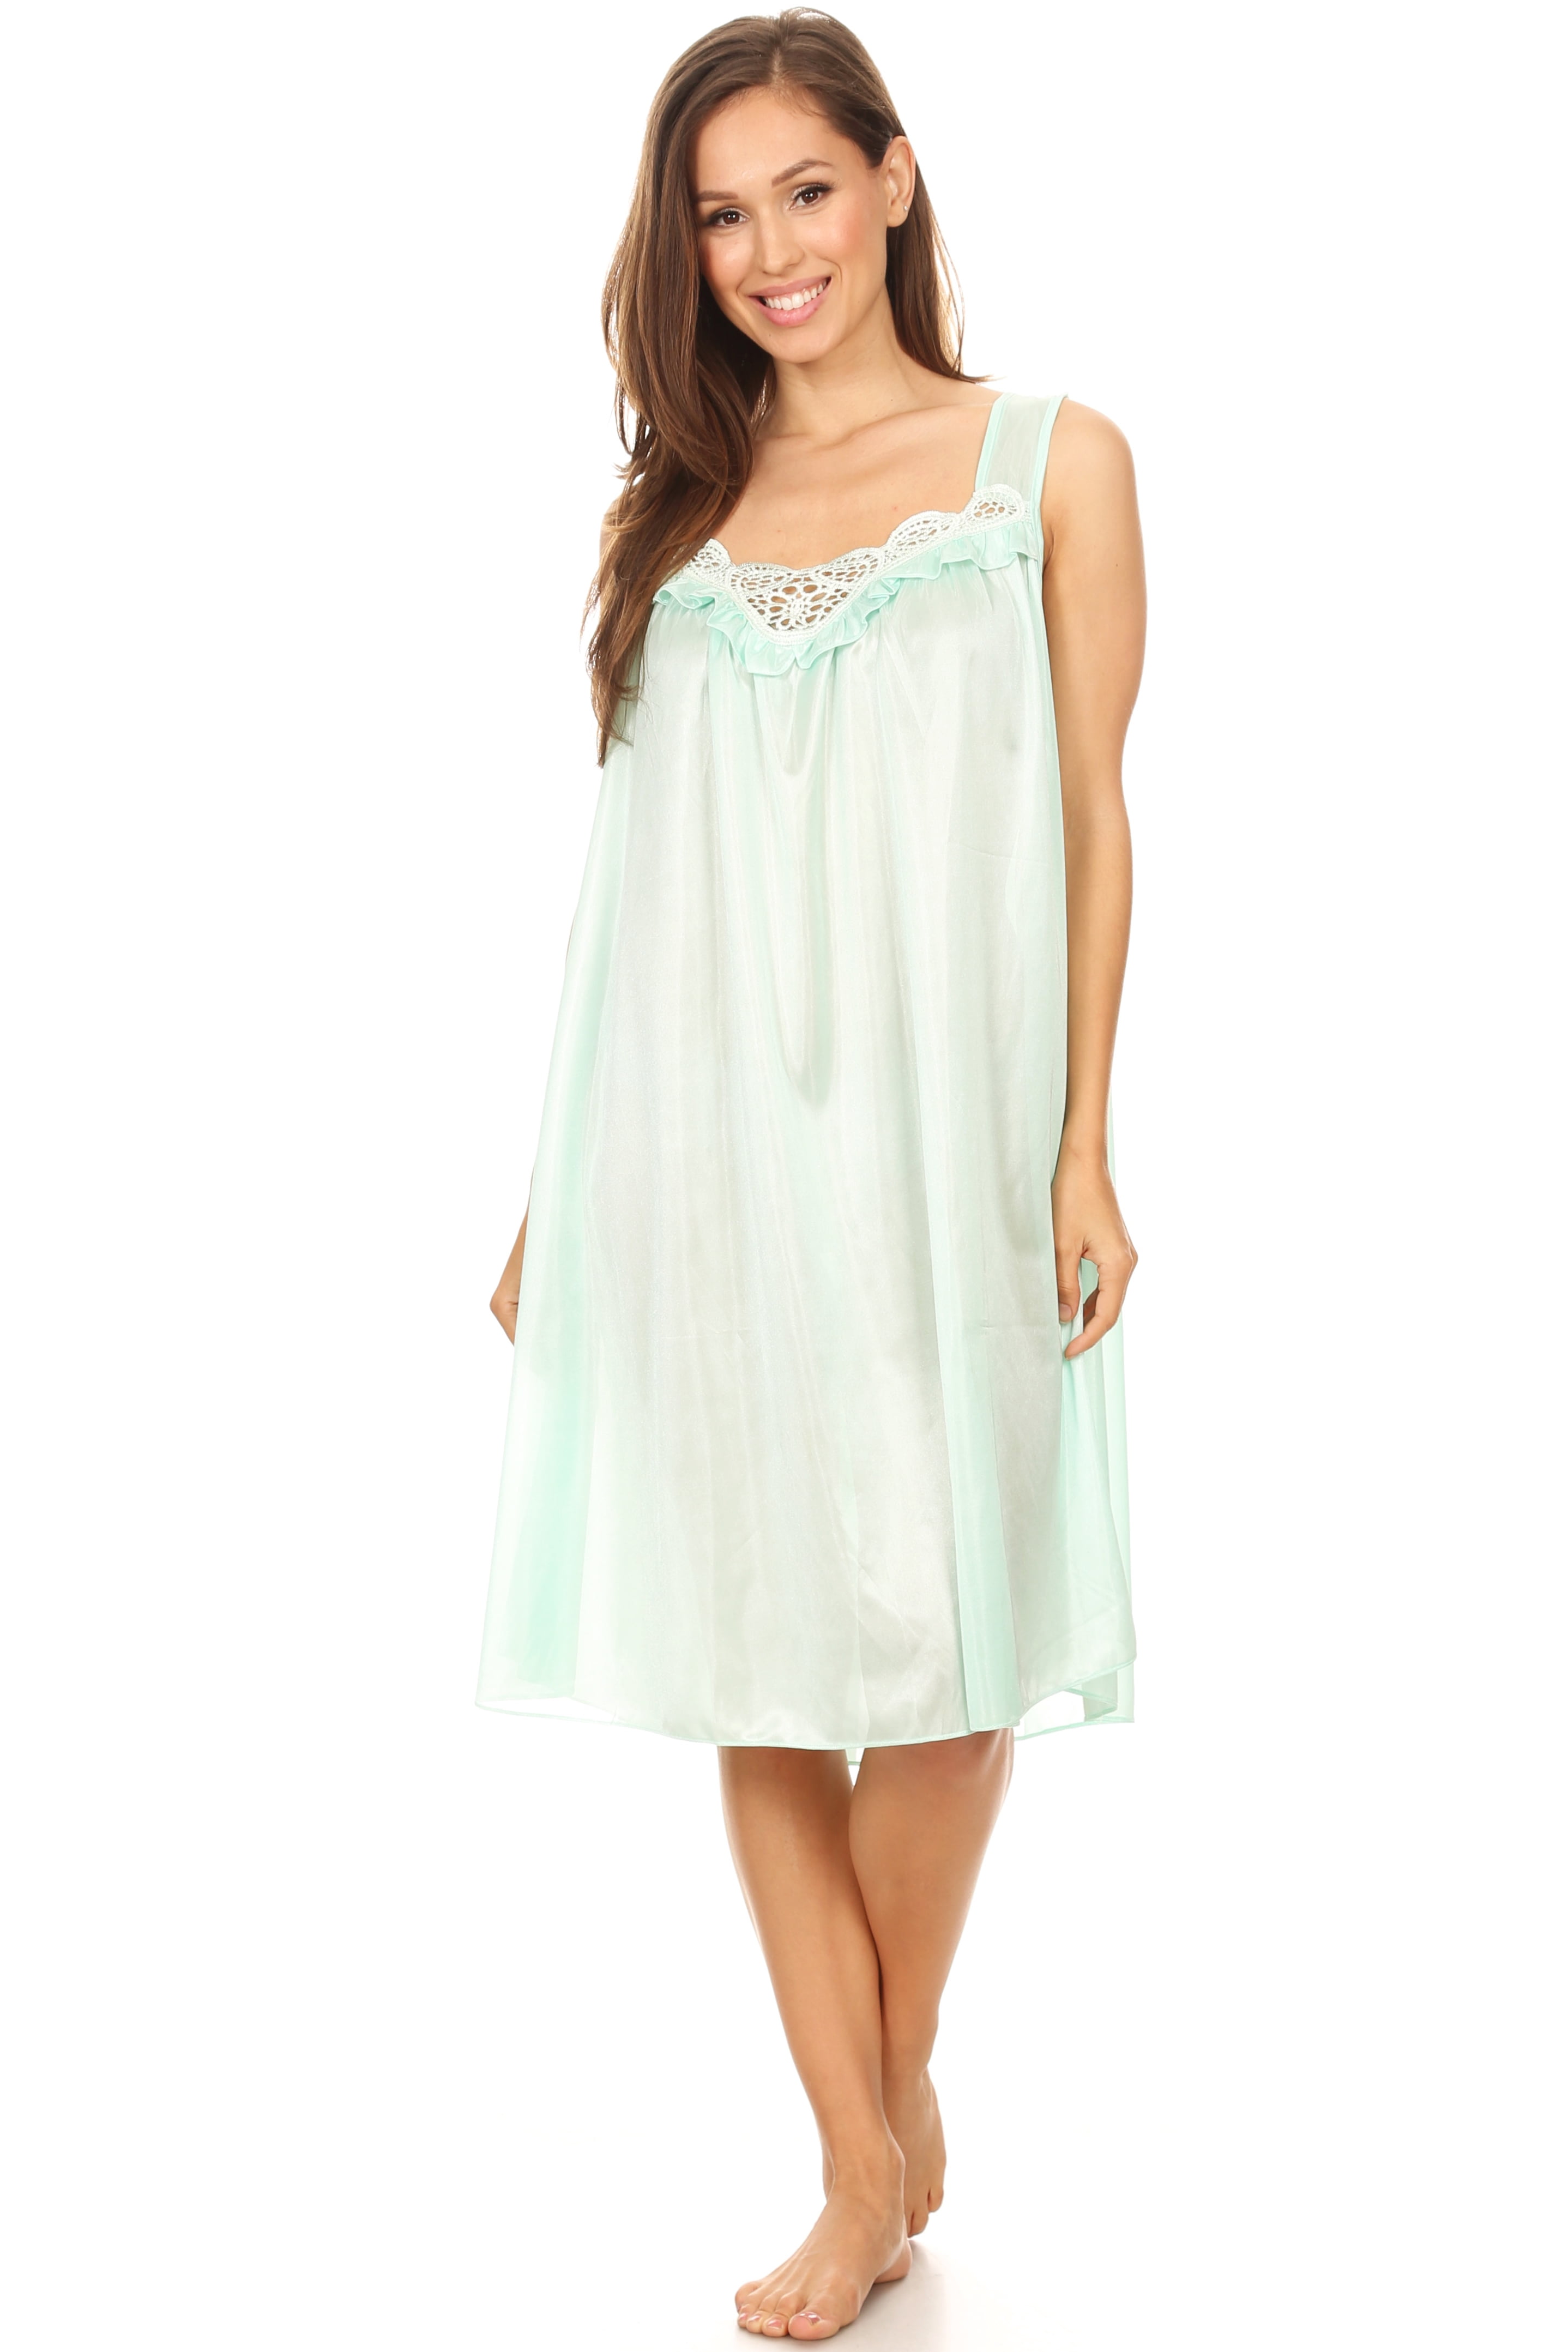 Lati Fashion Women Nightgown Sleepwear Female Sleep Dress Nightshirt ...